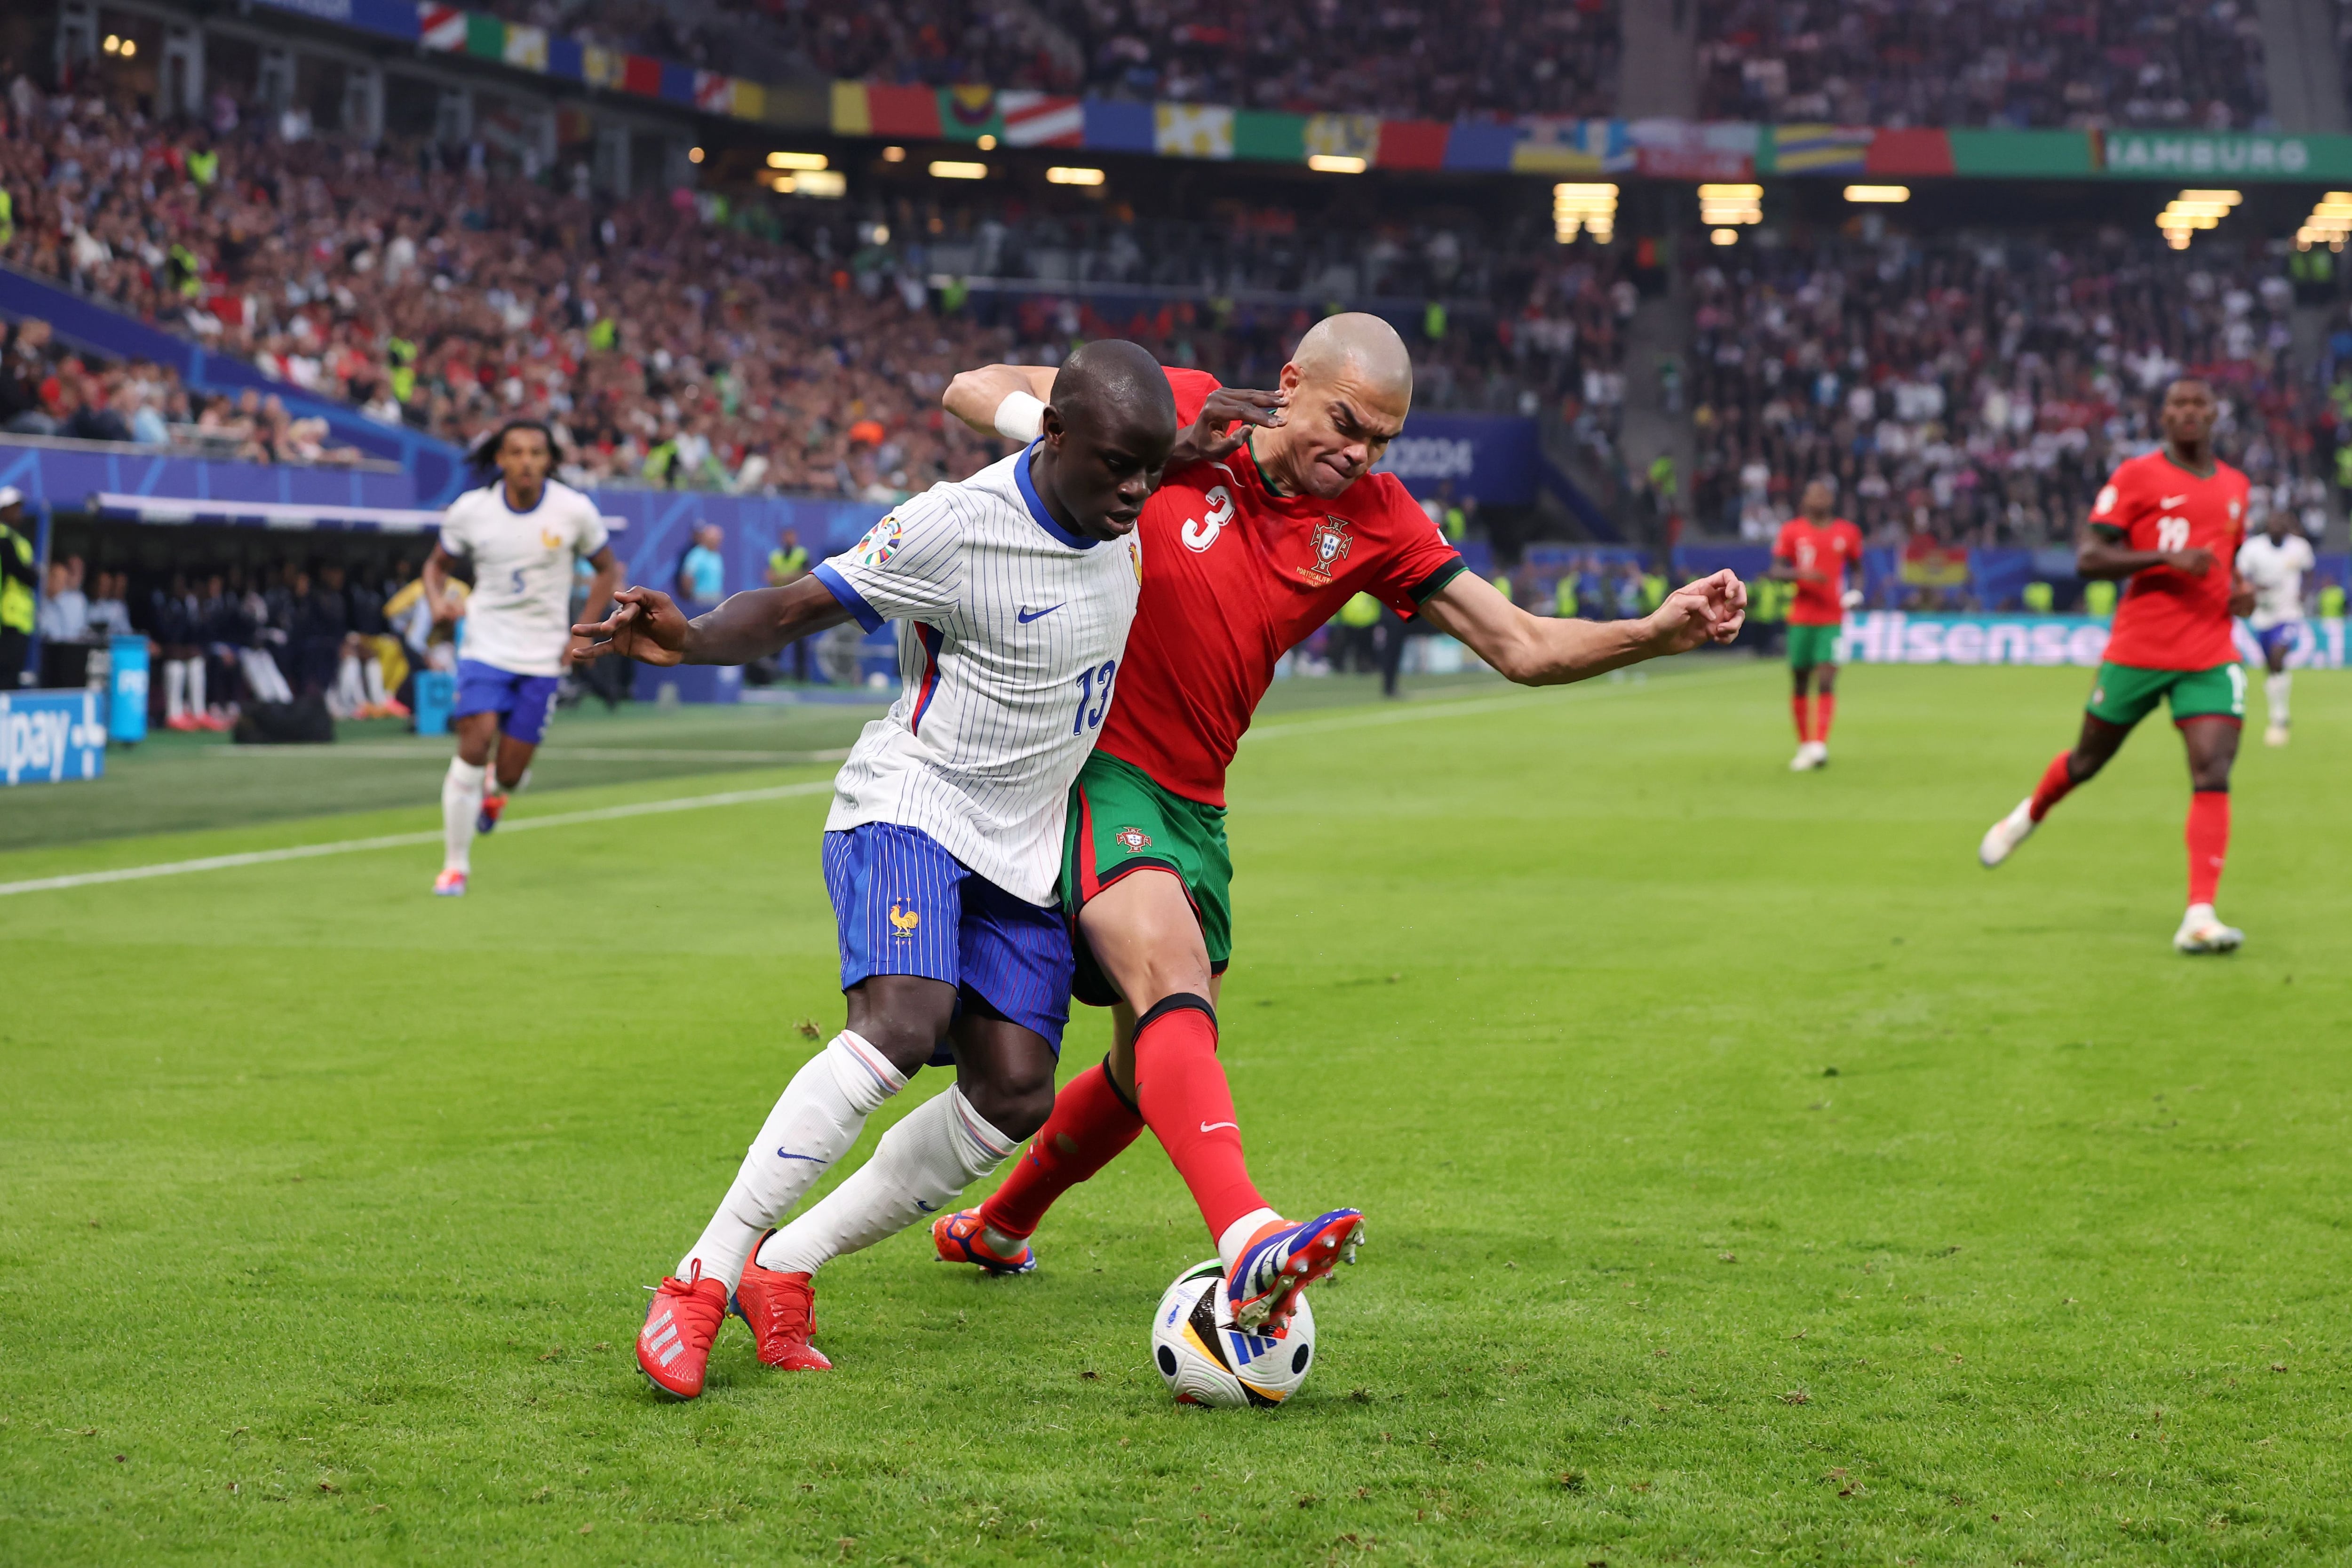 Portugal – Francia, en directo | La selección lusa y la francesa se miden en un partido muy igualado y con pocas ocasiones